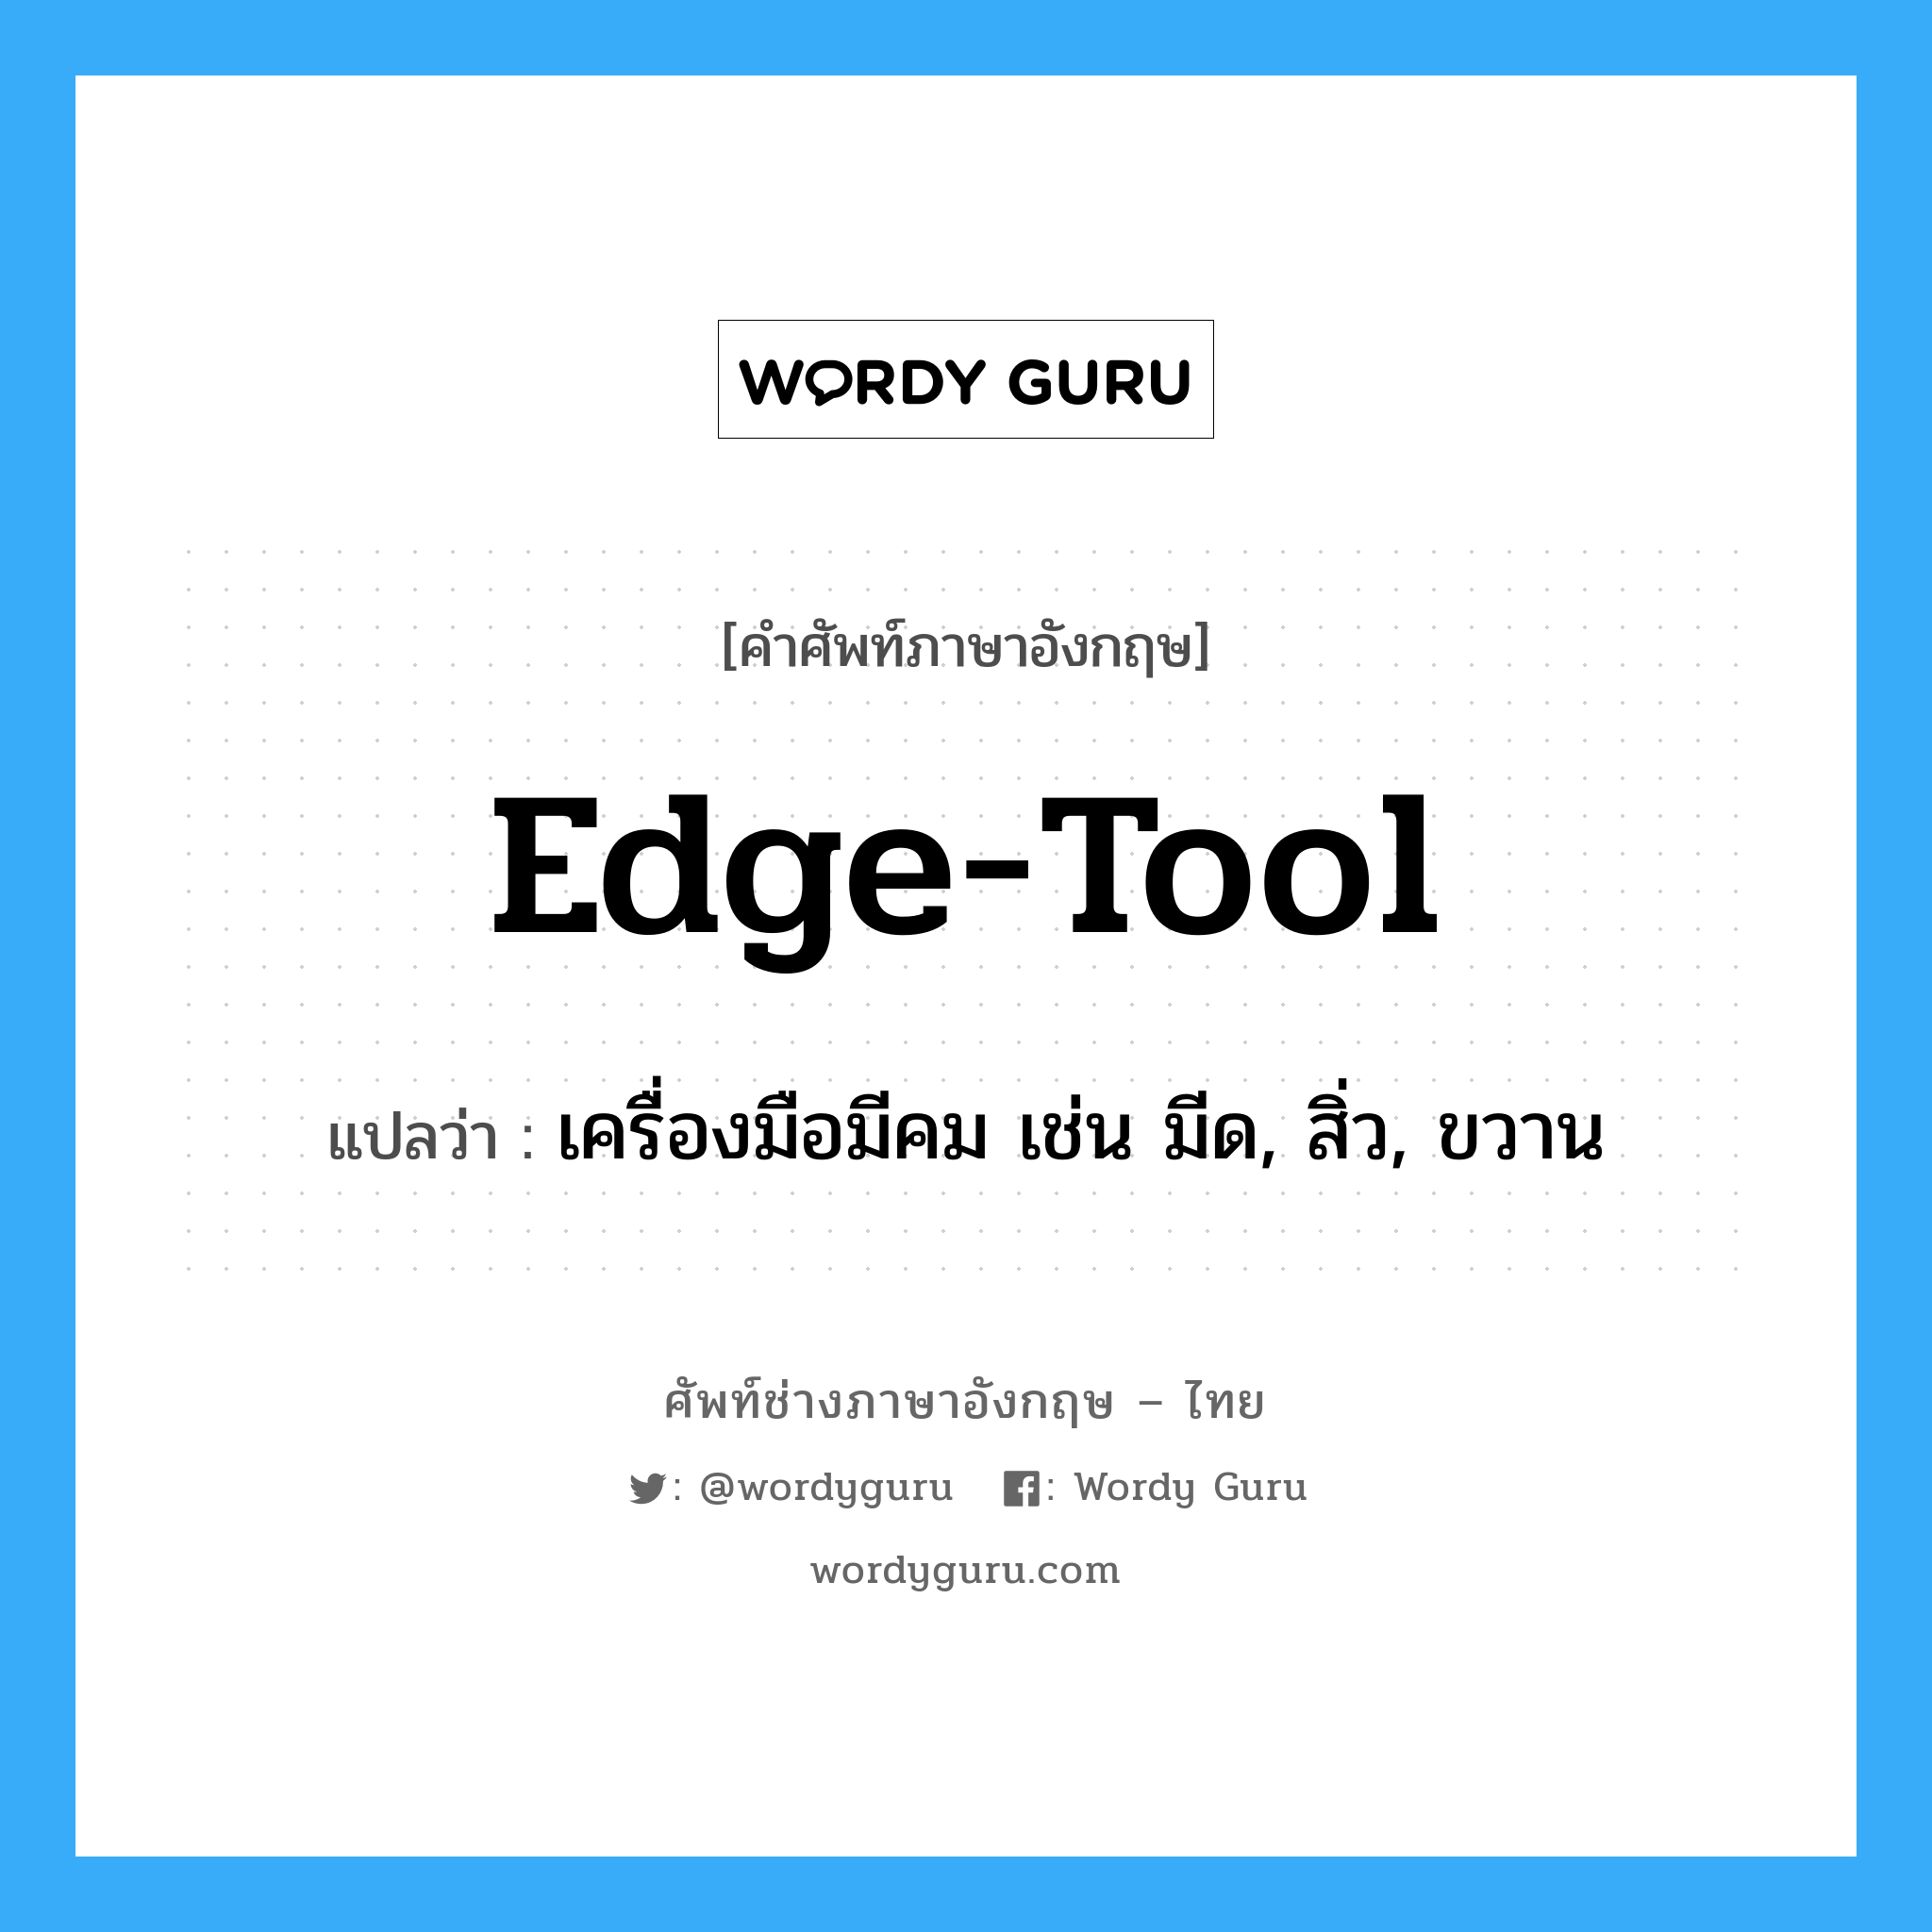 edge-tool แปลว่า?, คำศัพท์ช่างภาษาอังกฤษ - ไทย edge-tool คำศัพท์ภาษาอังกฤษ edge-tool แปลว่า เครื่องมือมีคม เช่น มีด, สิ่ว, ขวาน